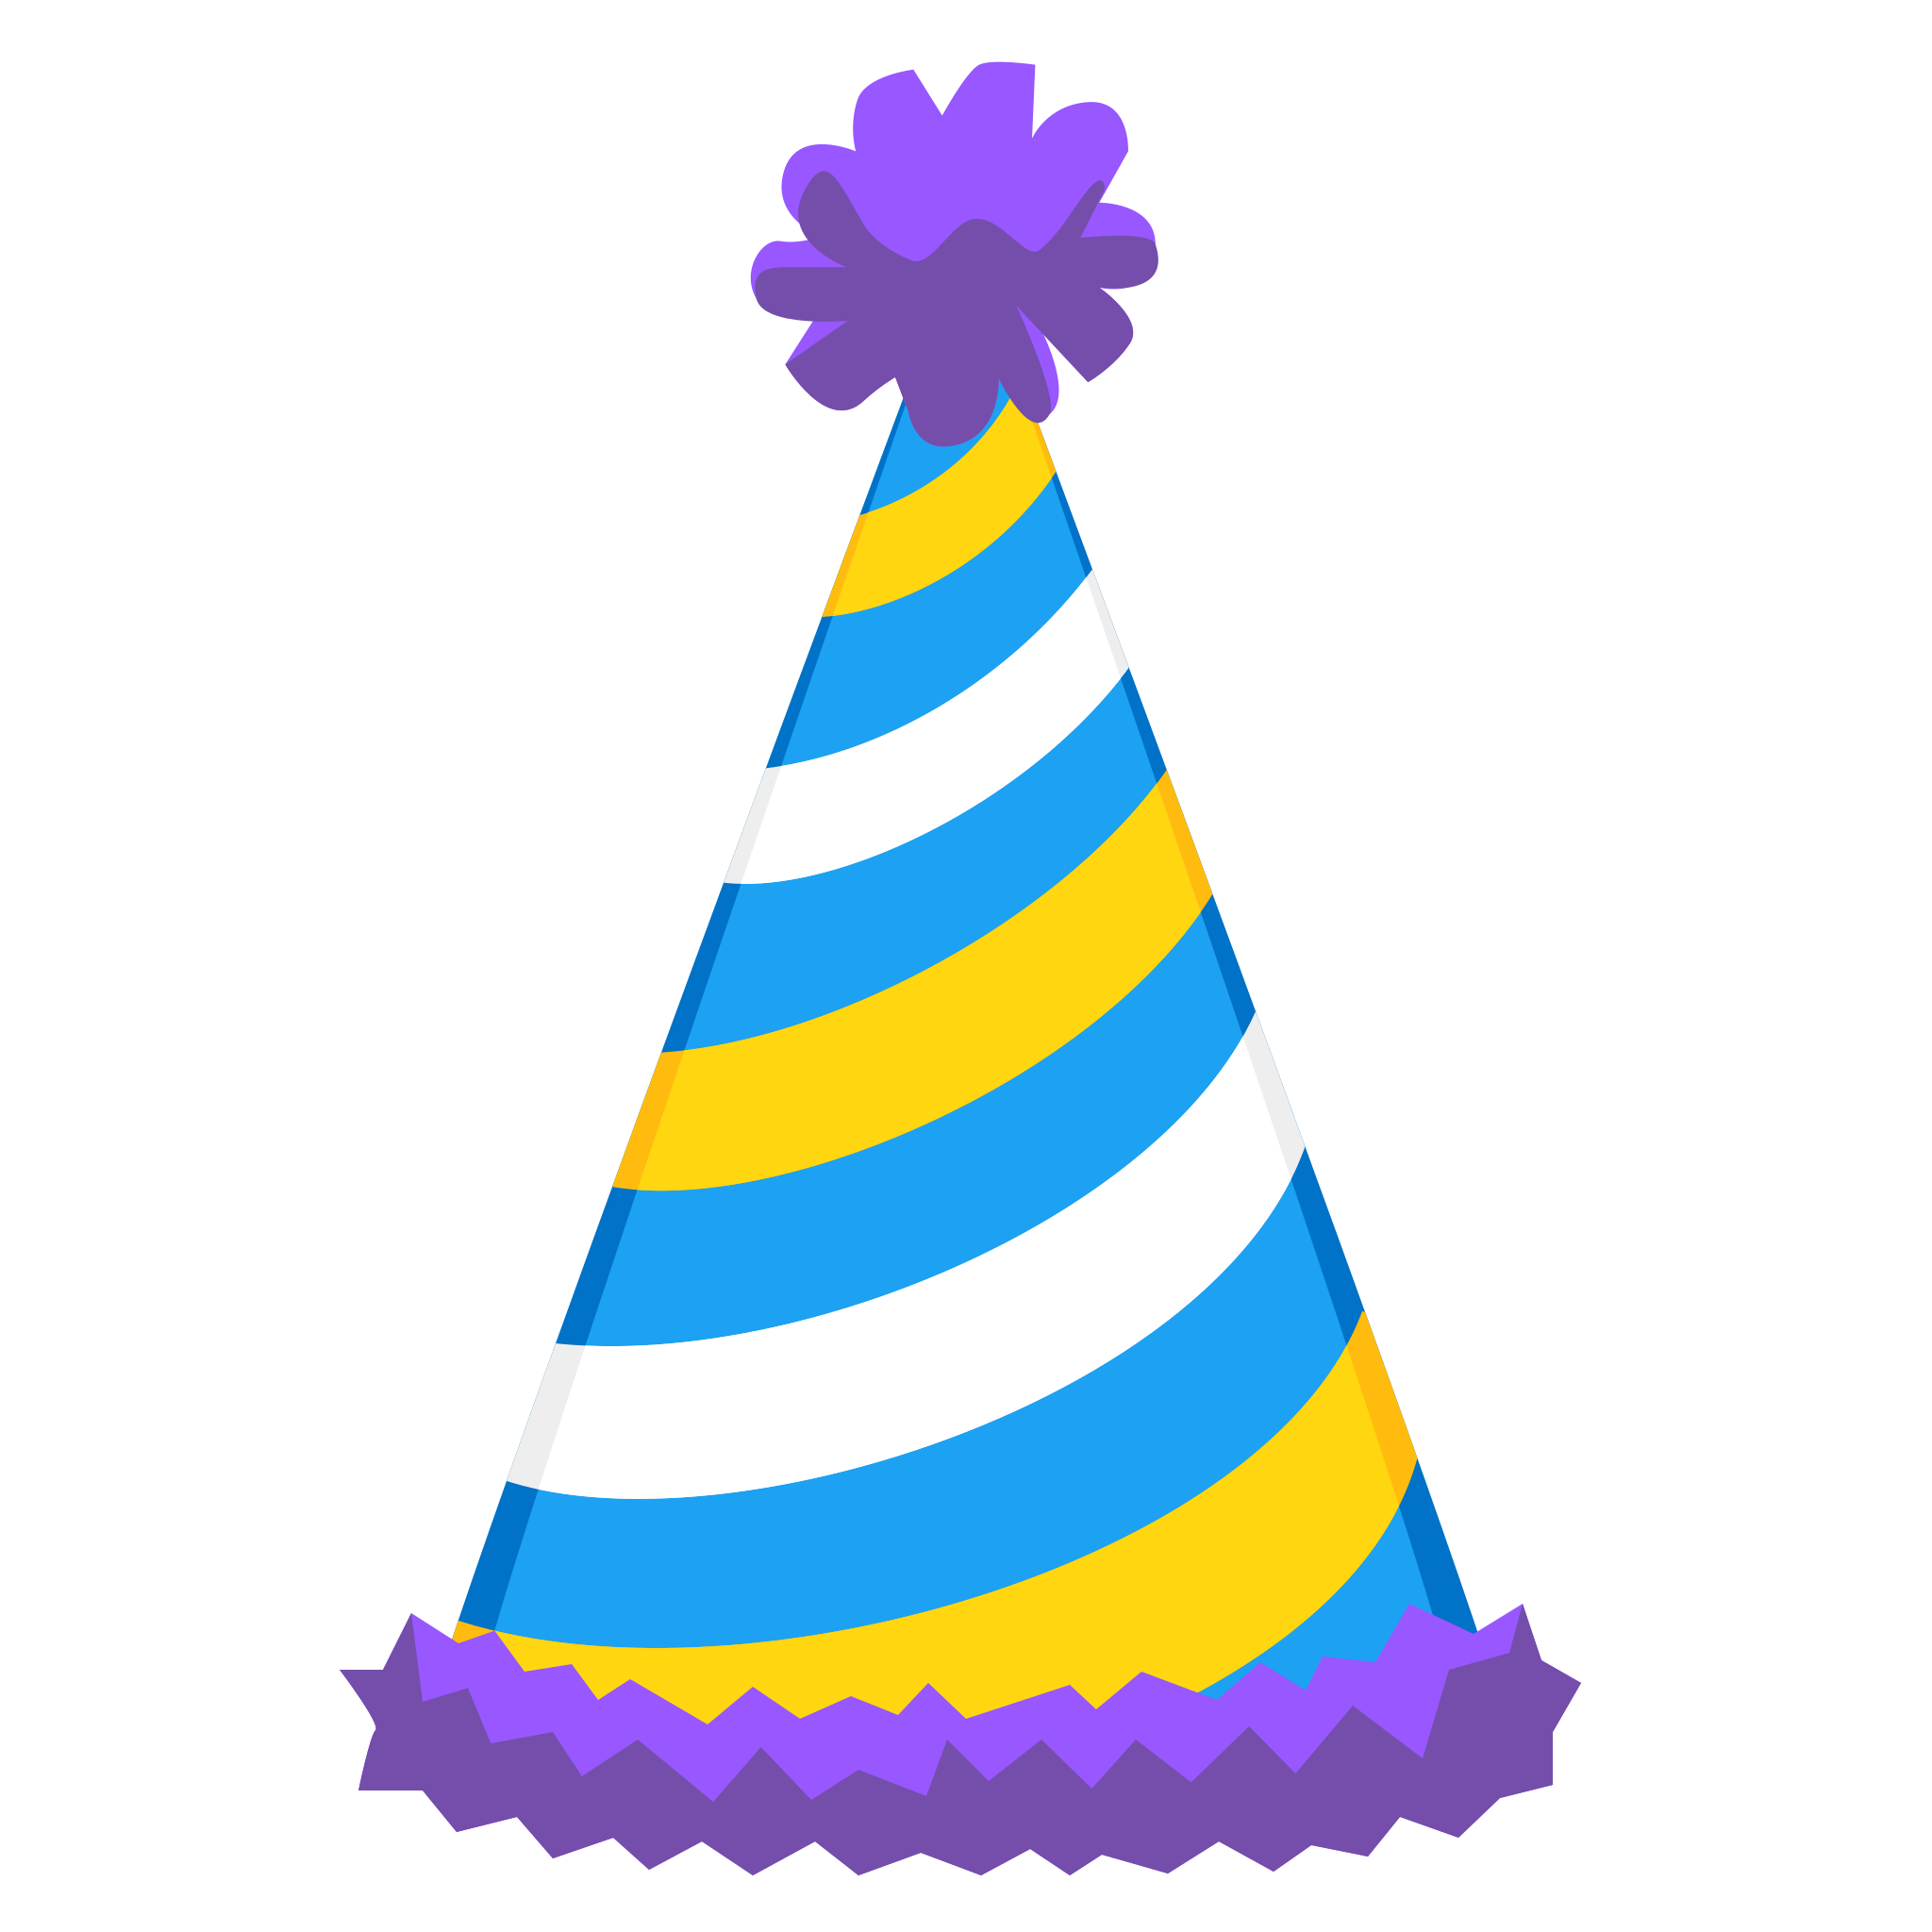 다채로운 생일 모자 PNG 이미지 무료 다운로드